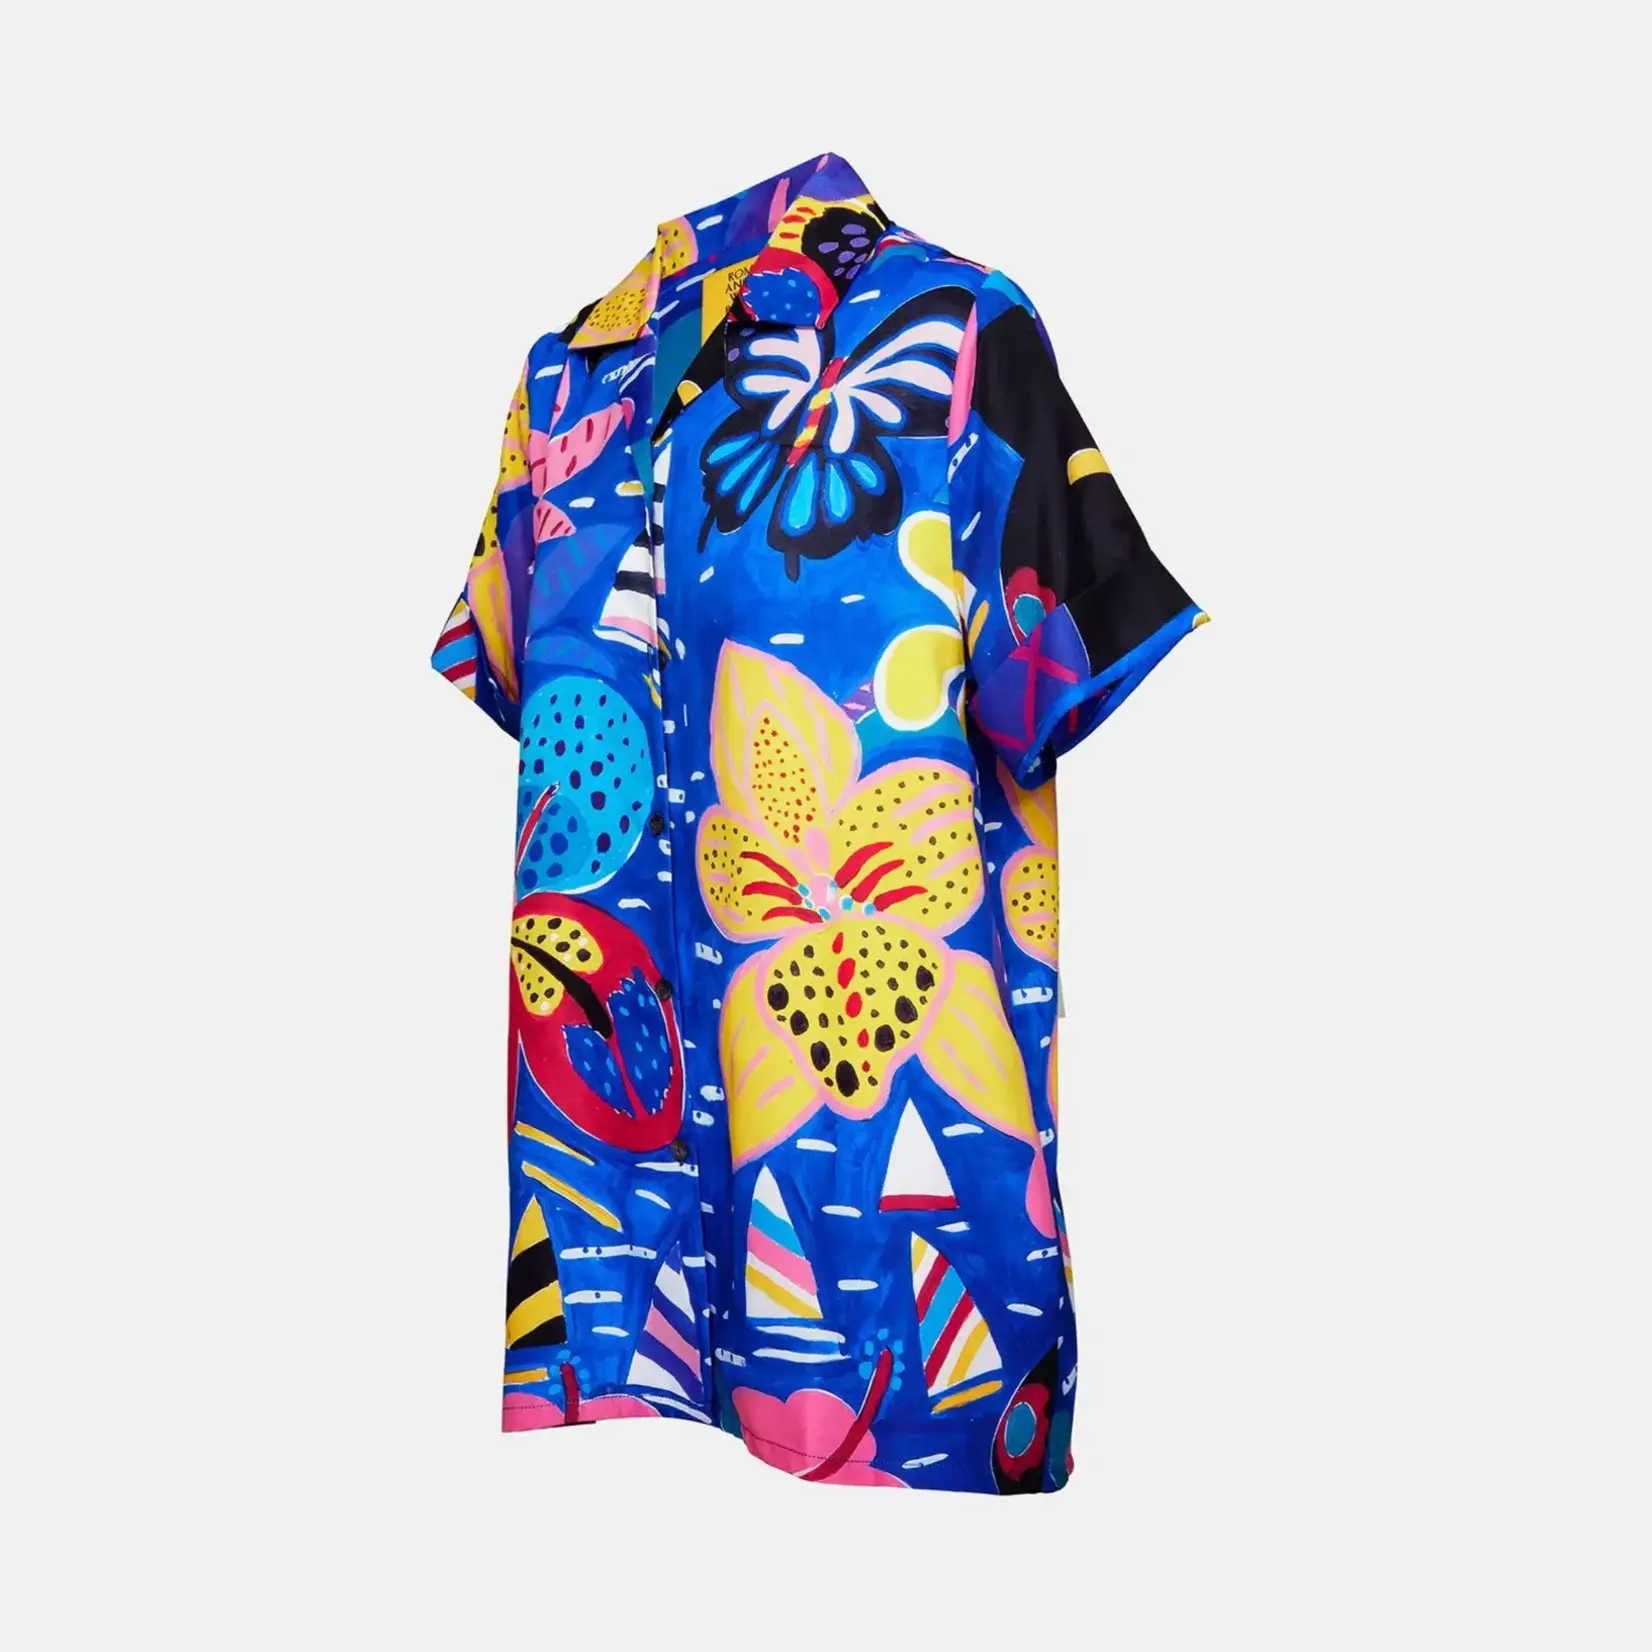 Clothing 'Vases' Hawaiian shirt - RWB x Ken Done